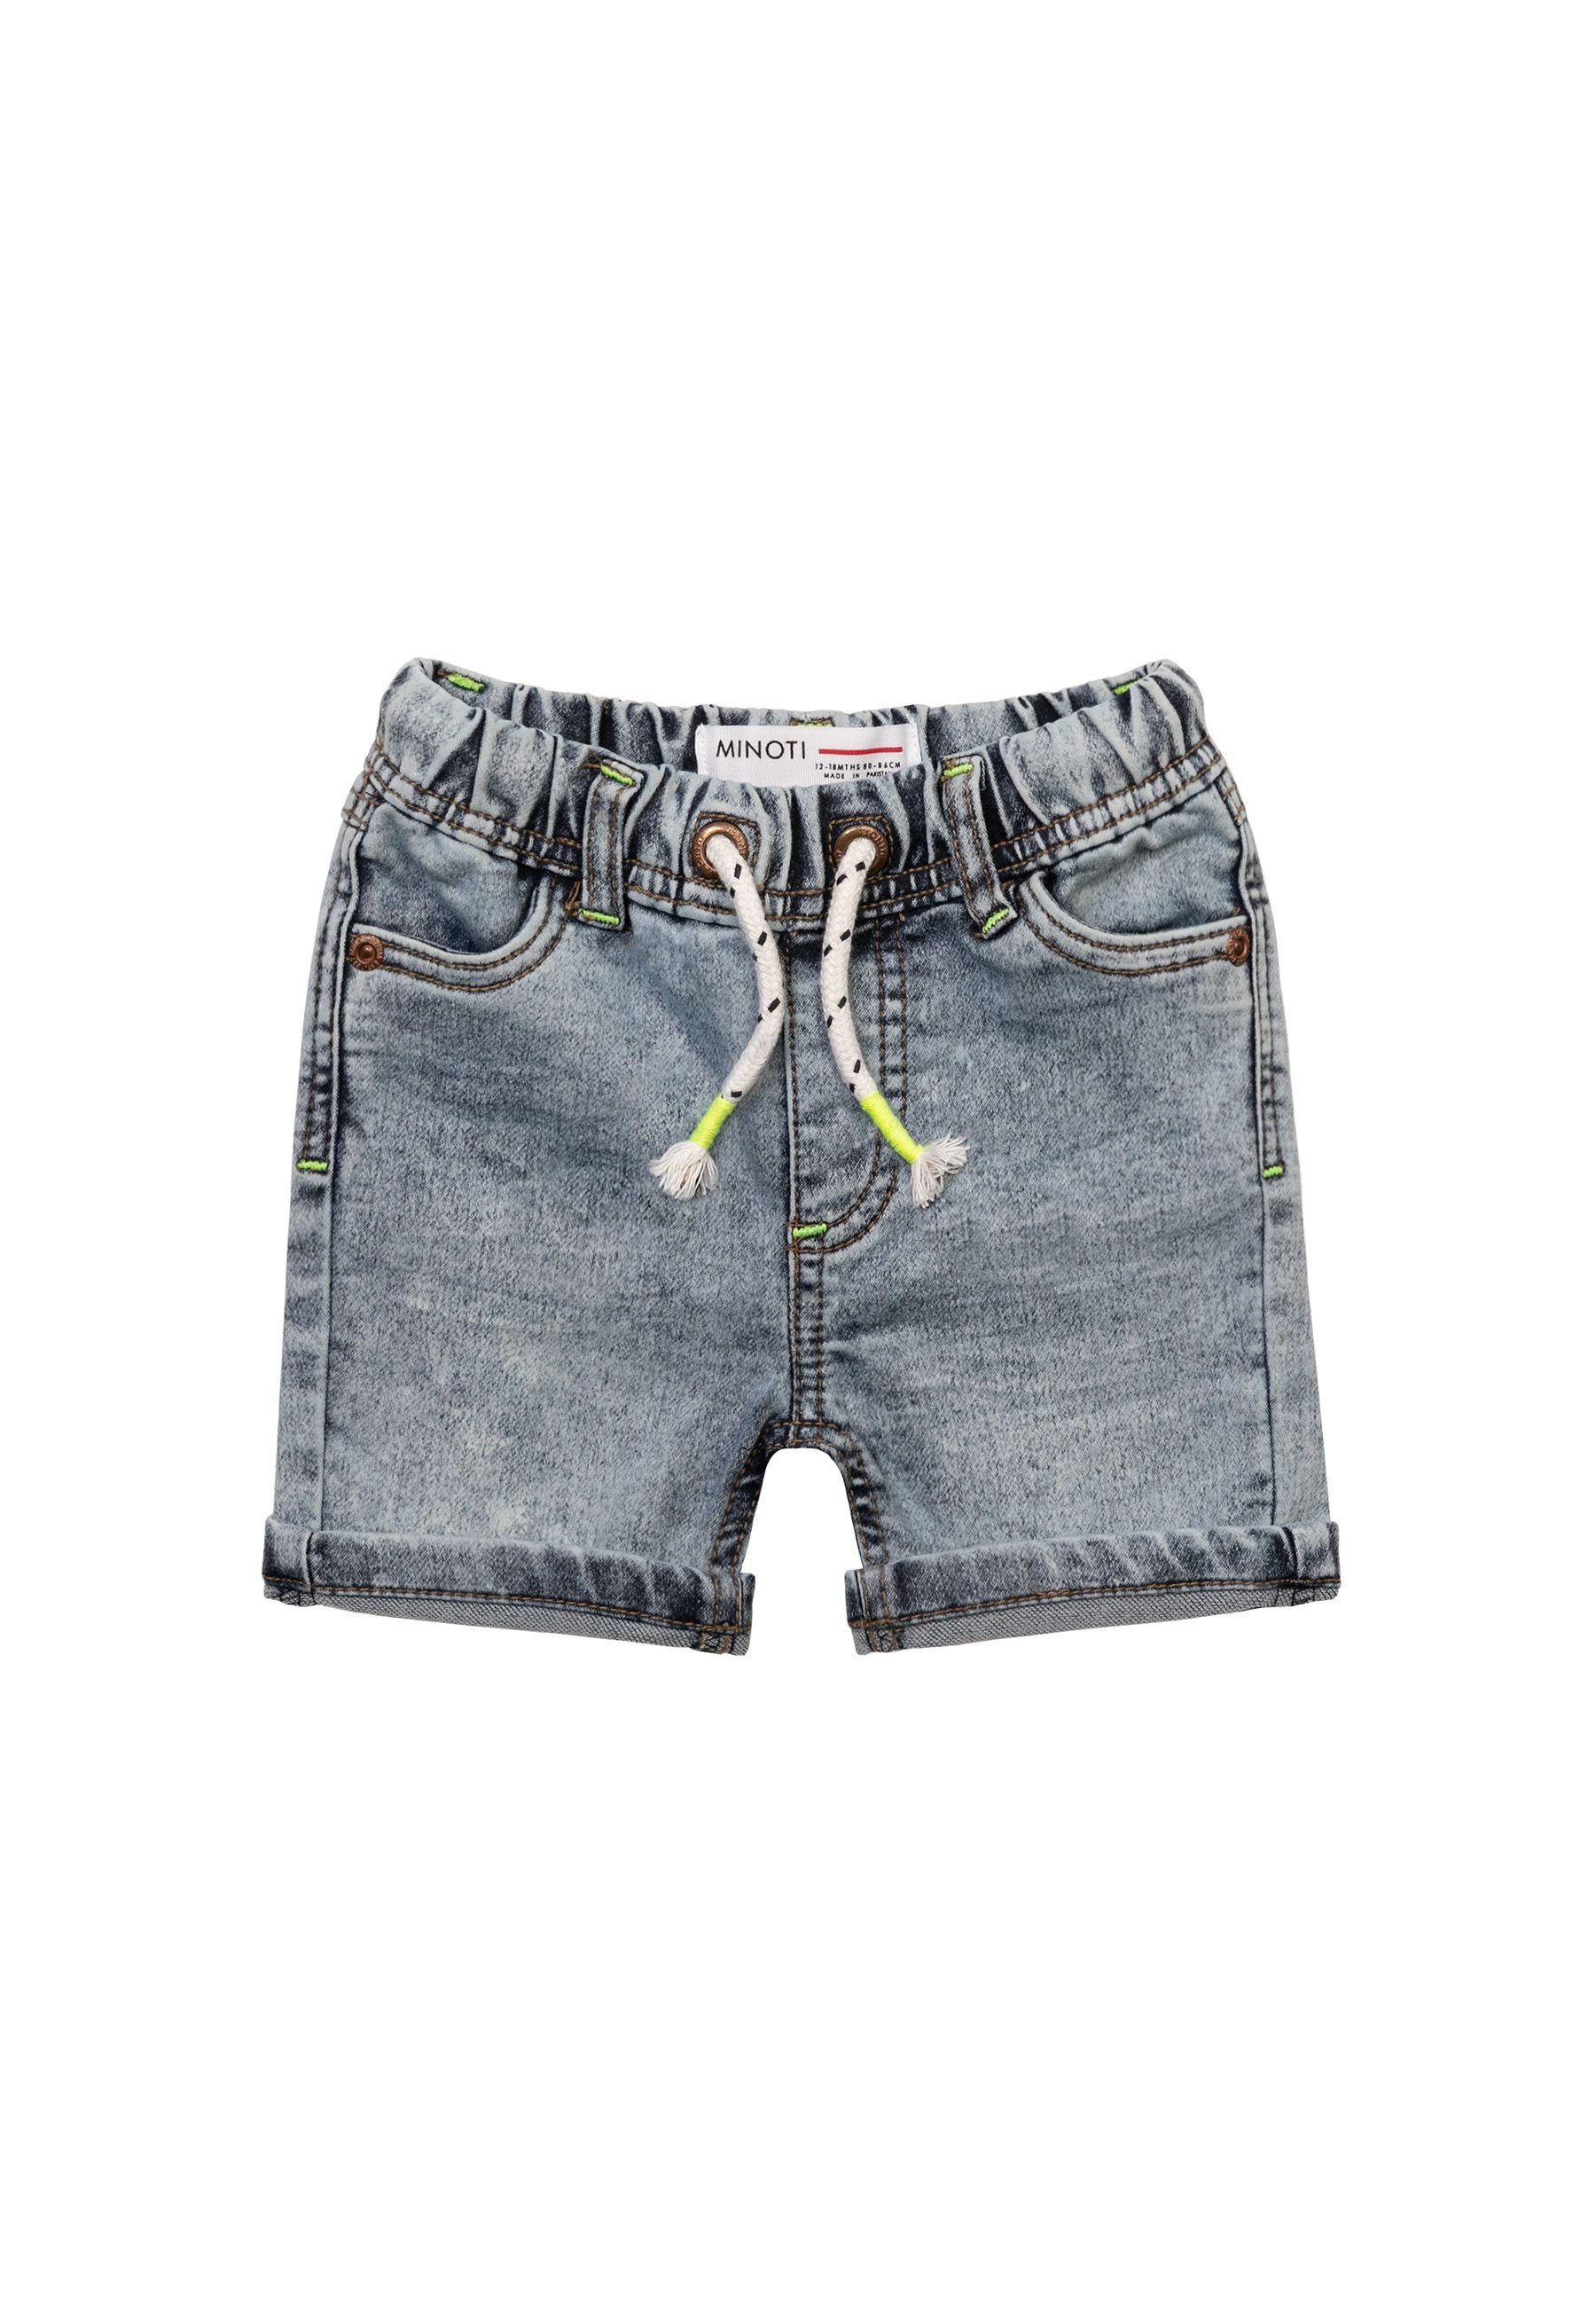 MINOTI Jeansshorts Kurze Jeans mit Schnürchen in der Taille (1y-14y) Denim-Hellblau